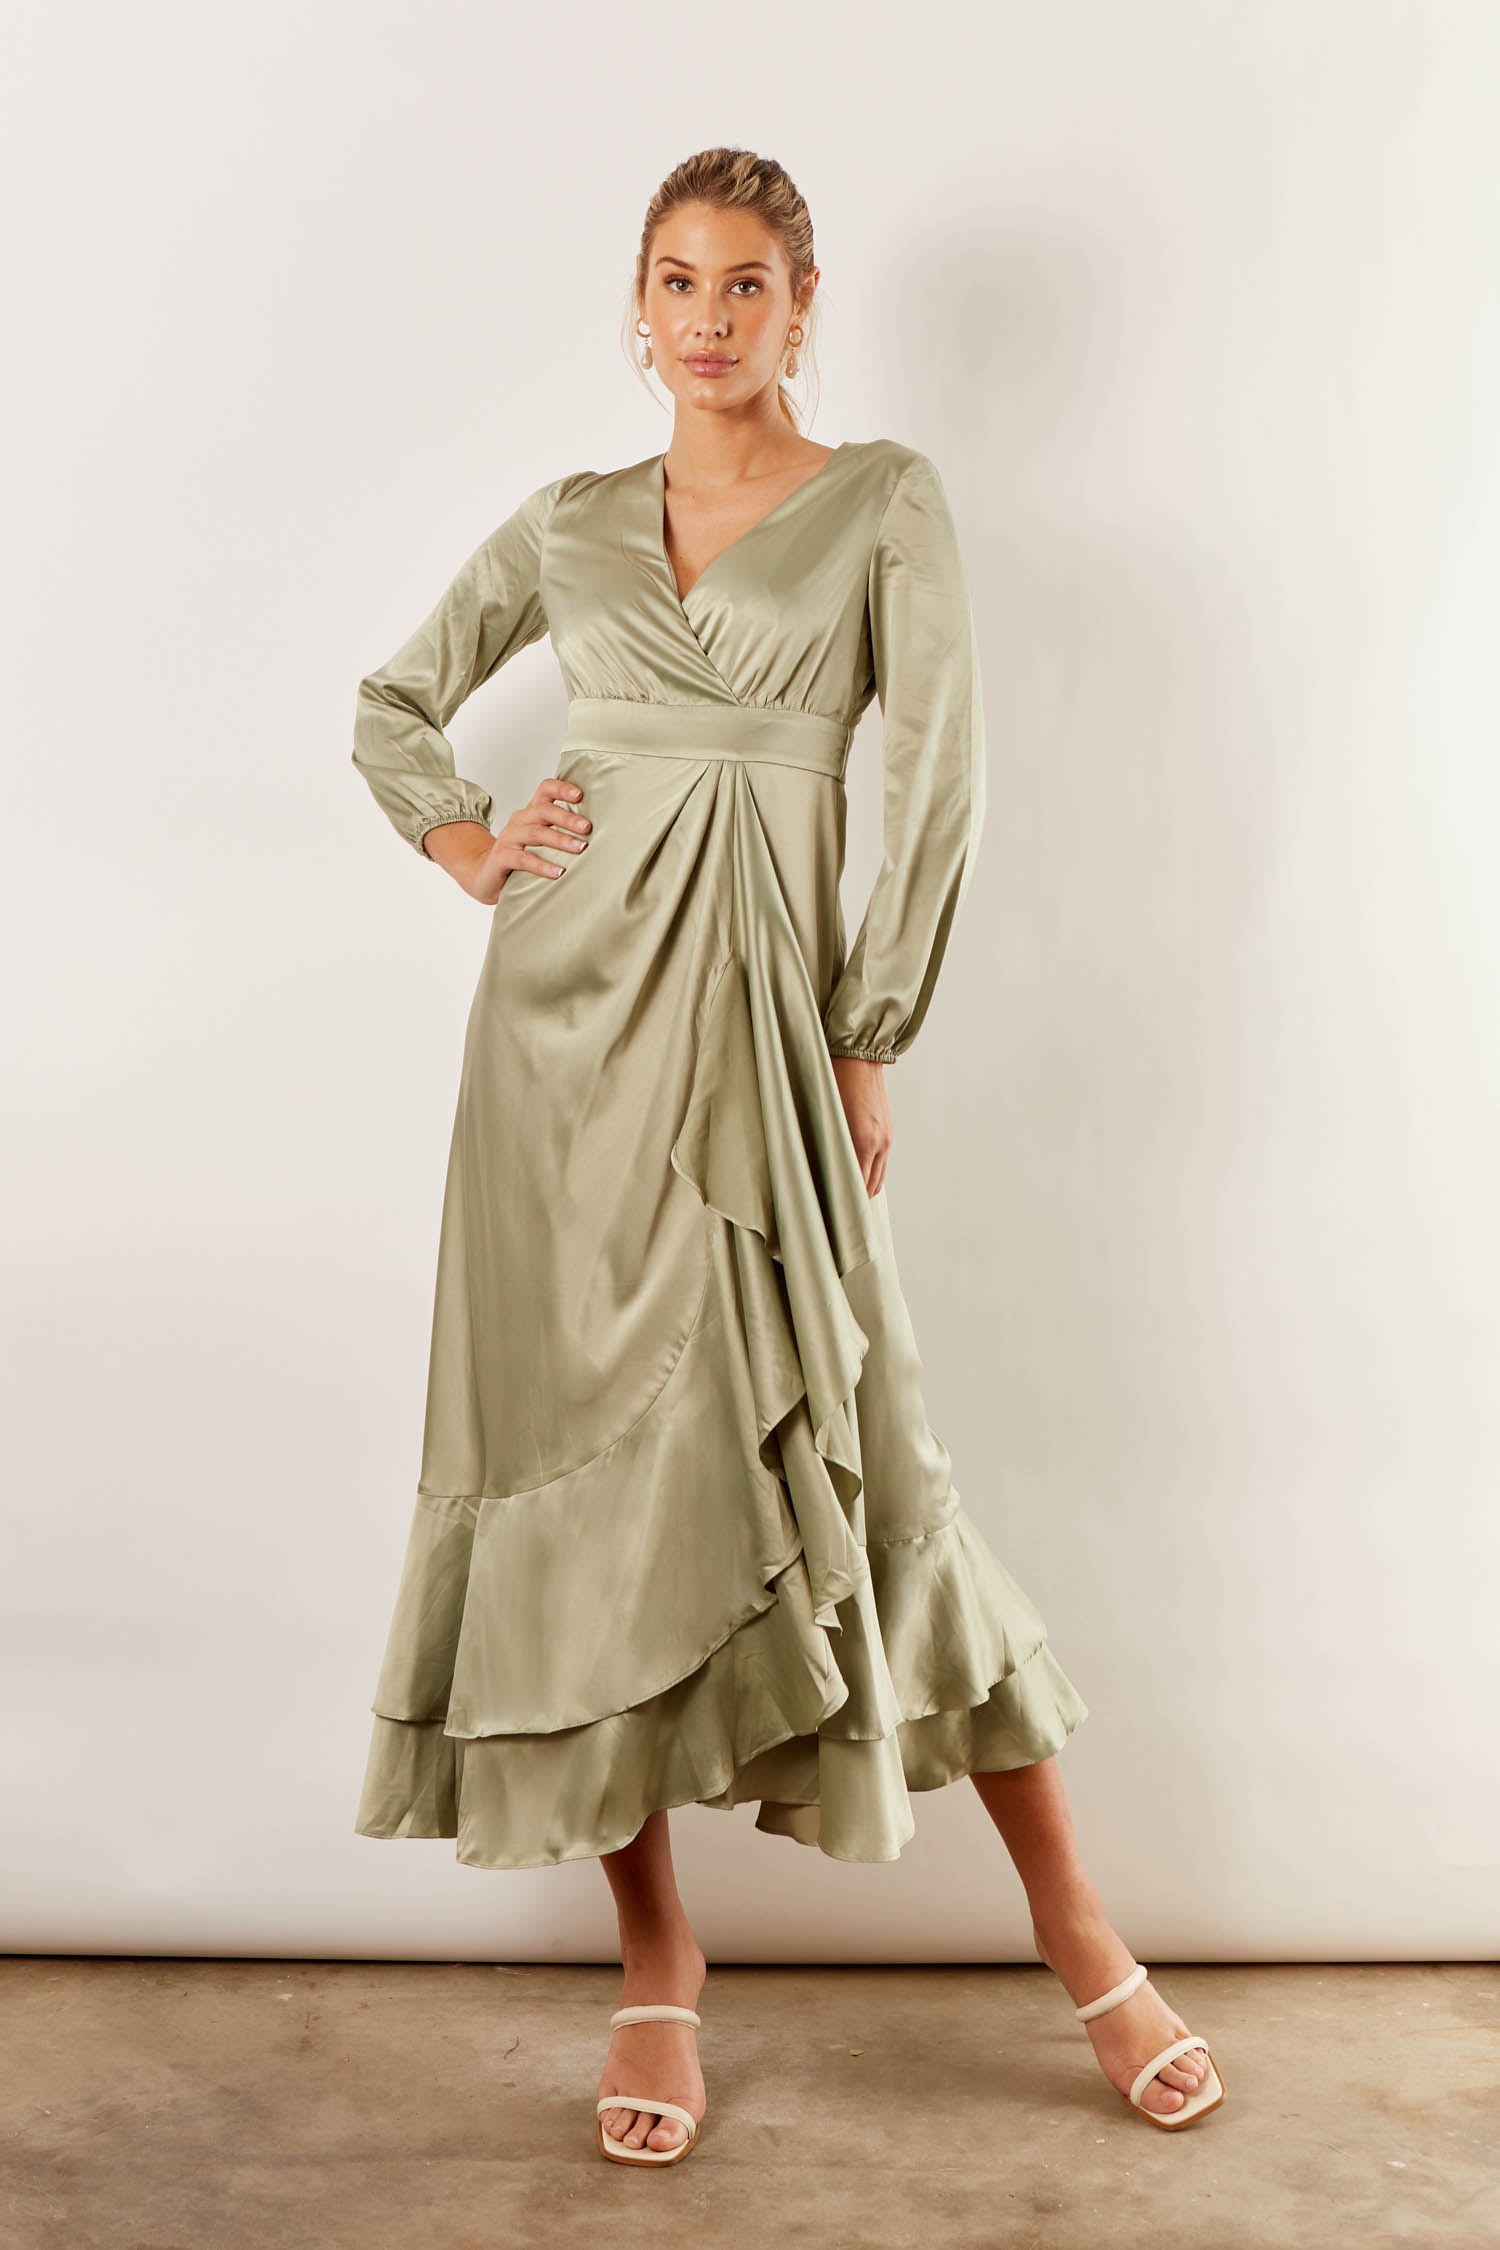 sage green dress australia Big sale ...